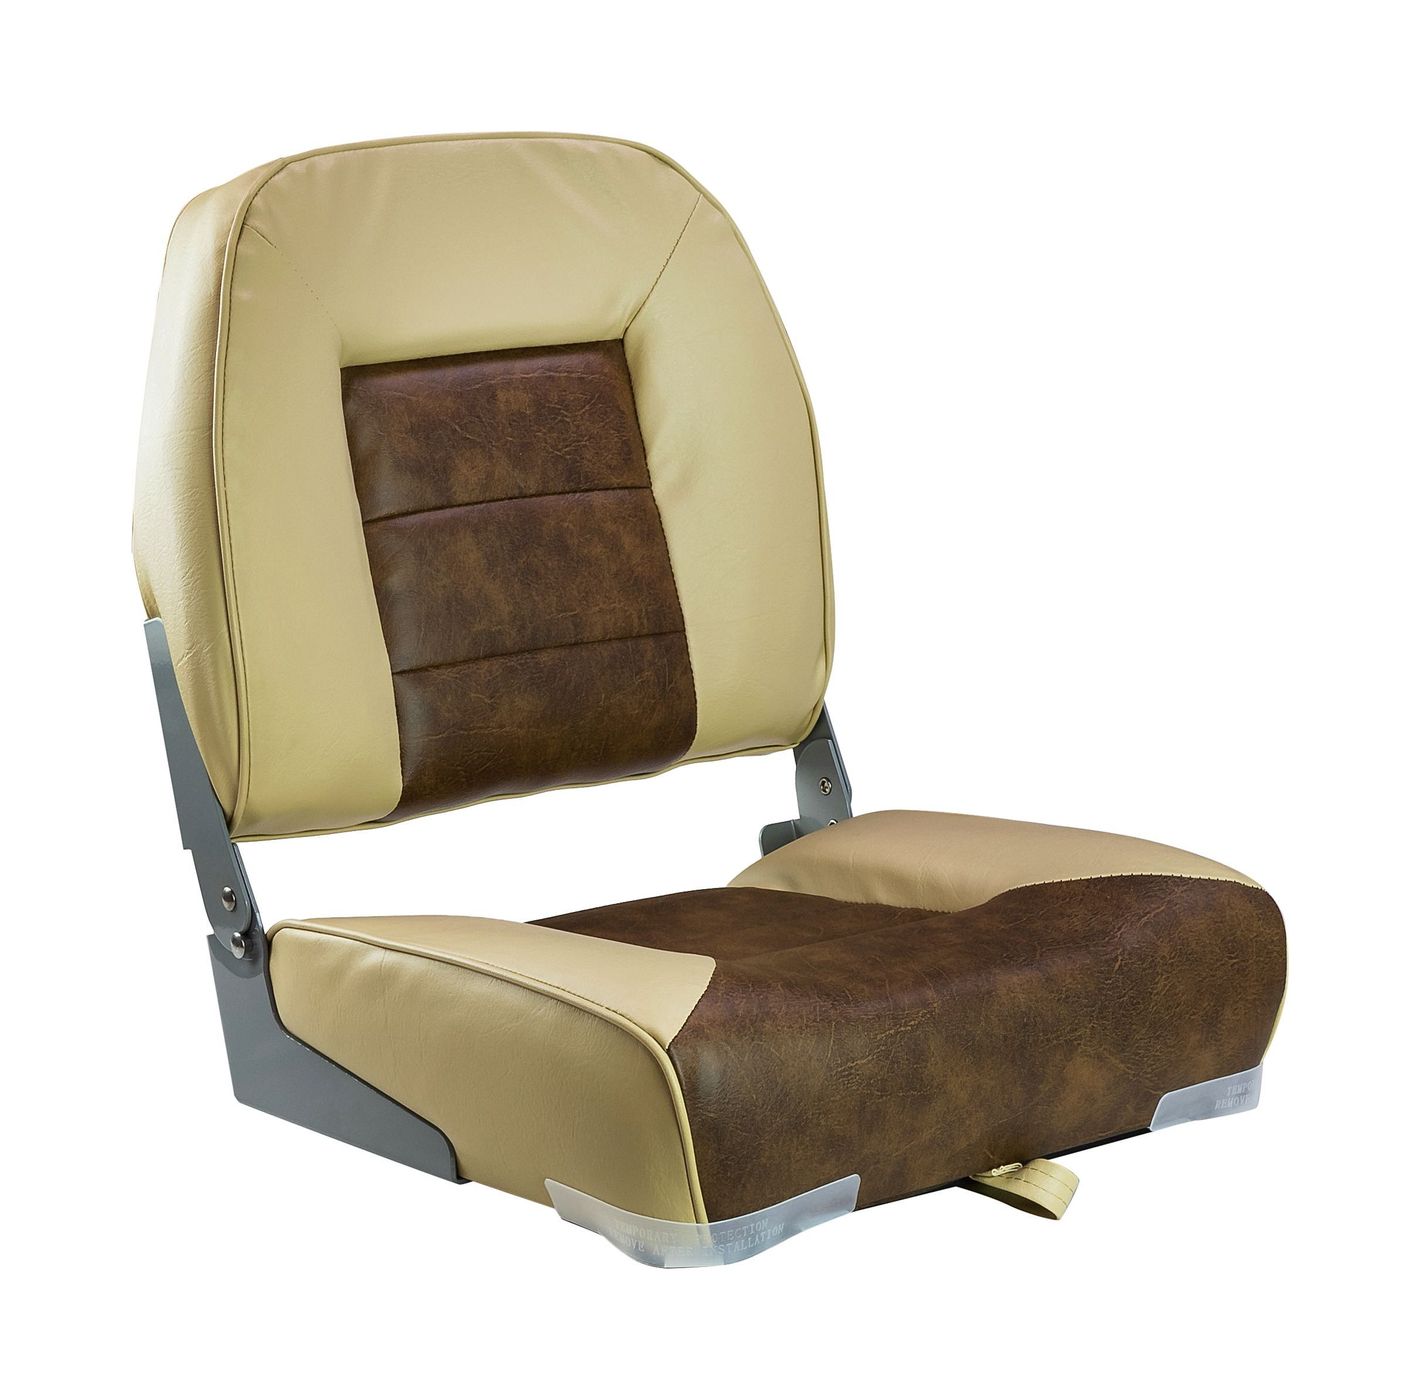 Кресло складное мягкое, обивка винил, цвет песочный/коричневый, Marine Rocket 75121SB-MR накидка массажер на сиденье 45×45 см дерево коричневый